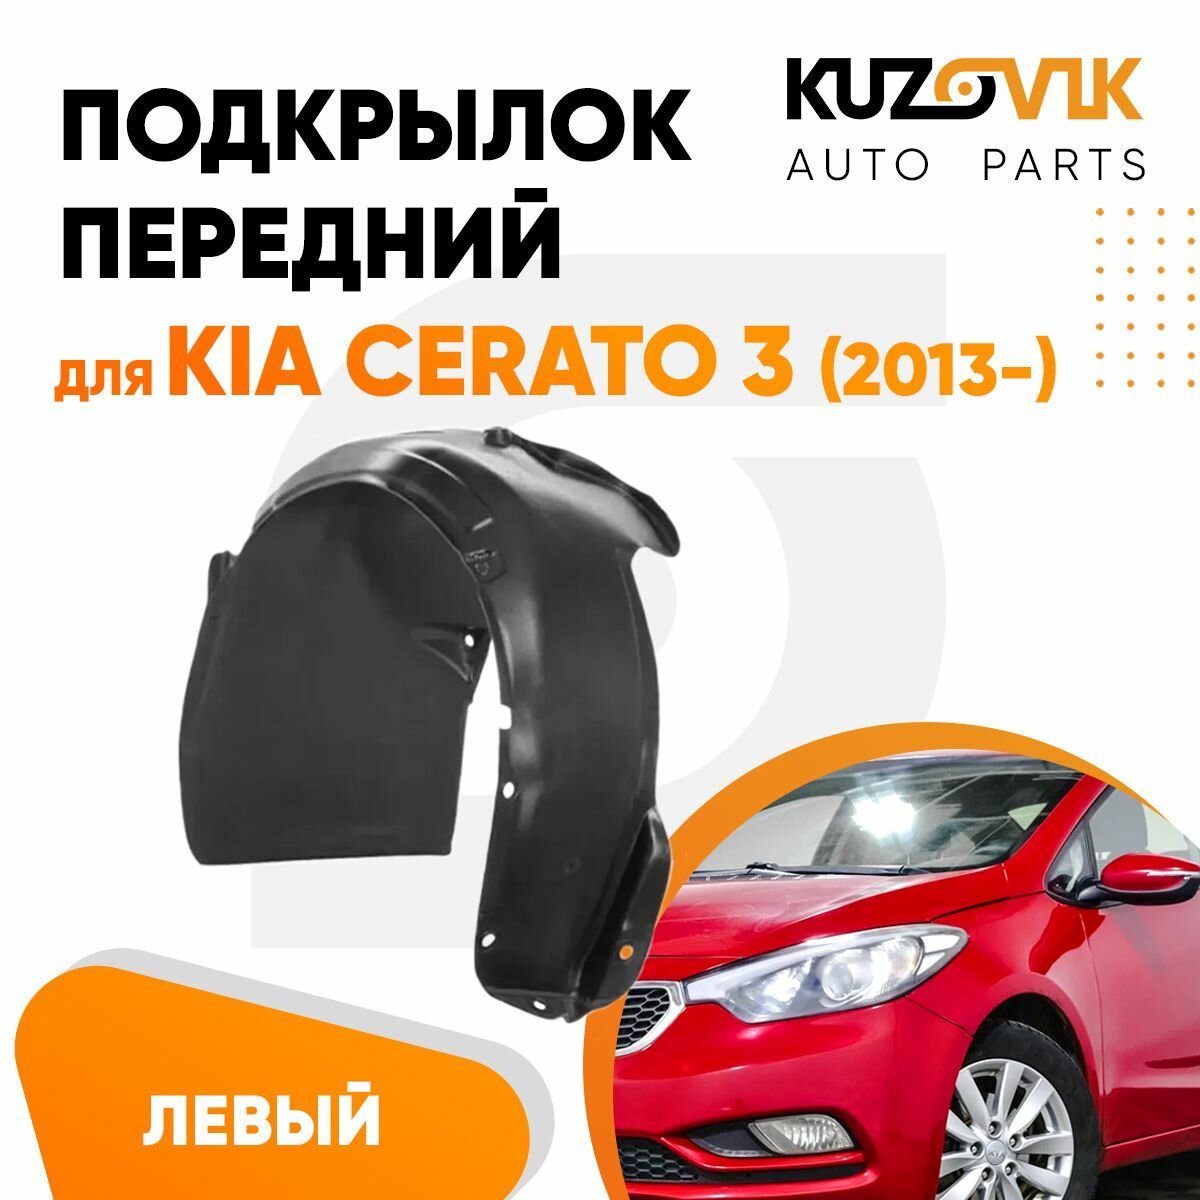 Подкрылок передний для Киа Церато Kia Cerato 3 (2013-) левый